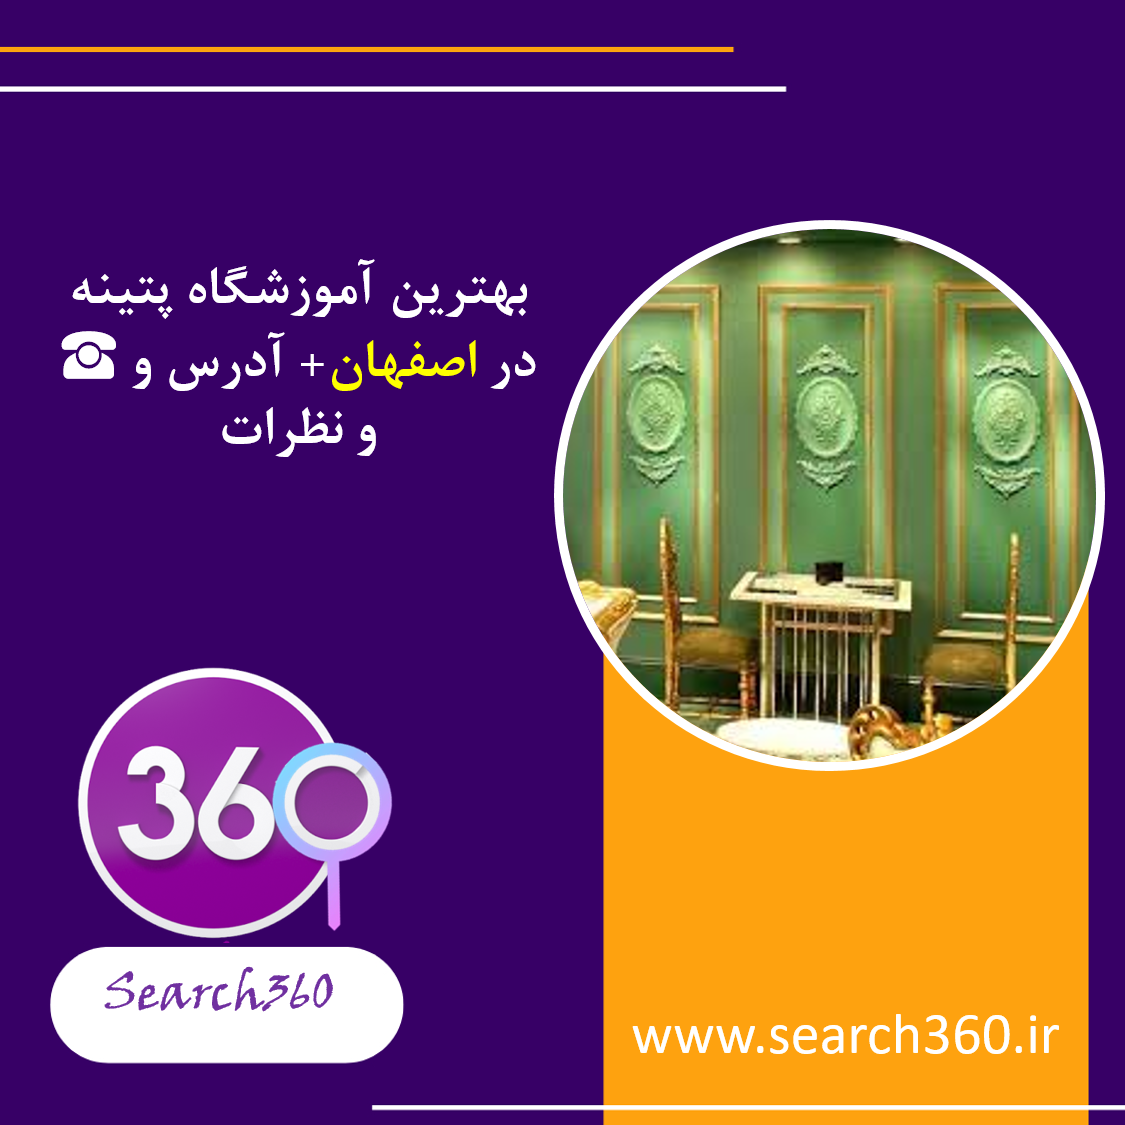 بهترین آموزشگاه پتینه اصفهان با ادرس تلفن و نظرات